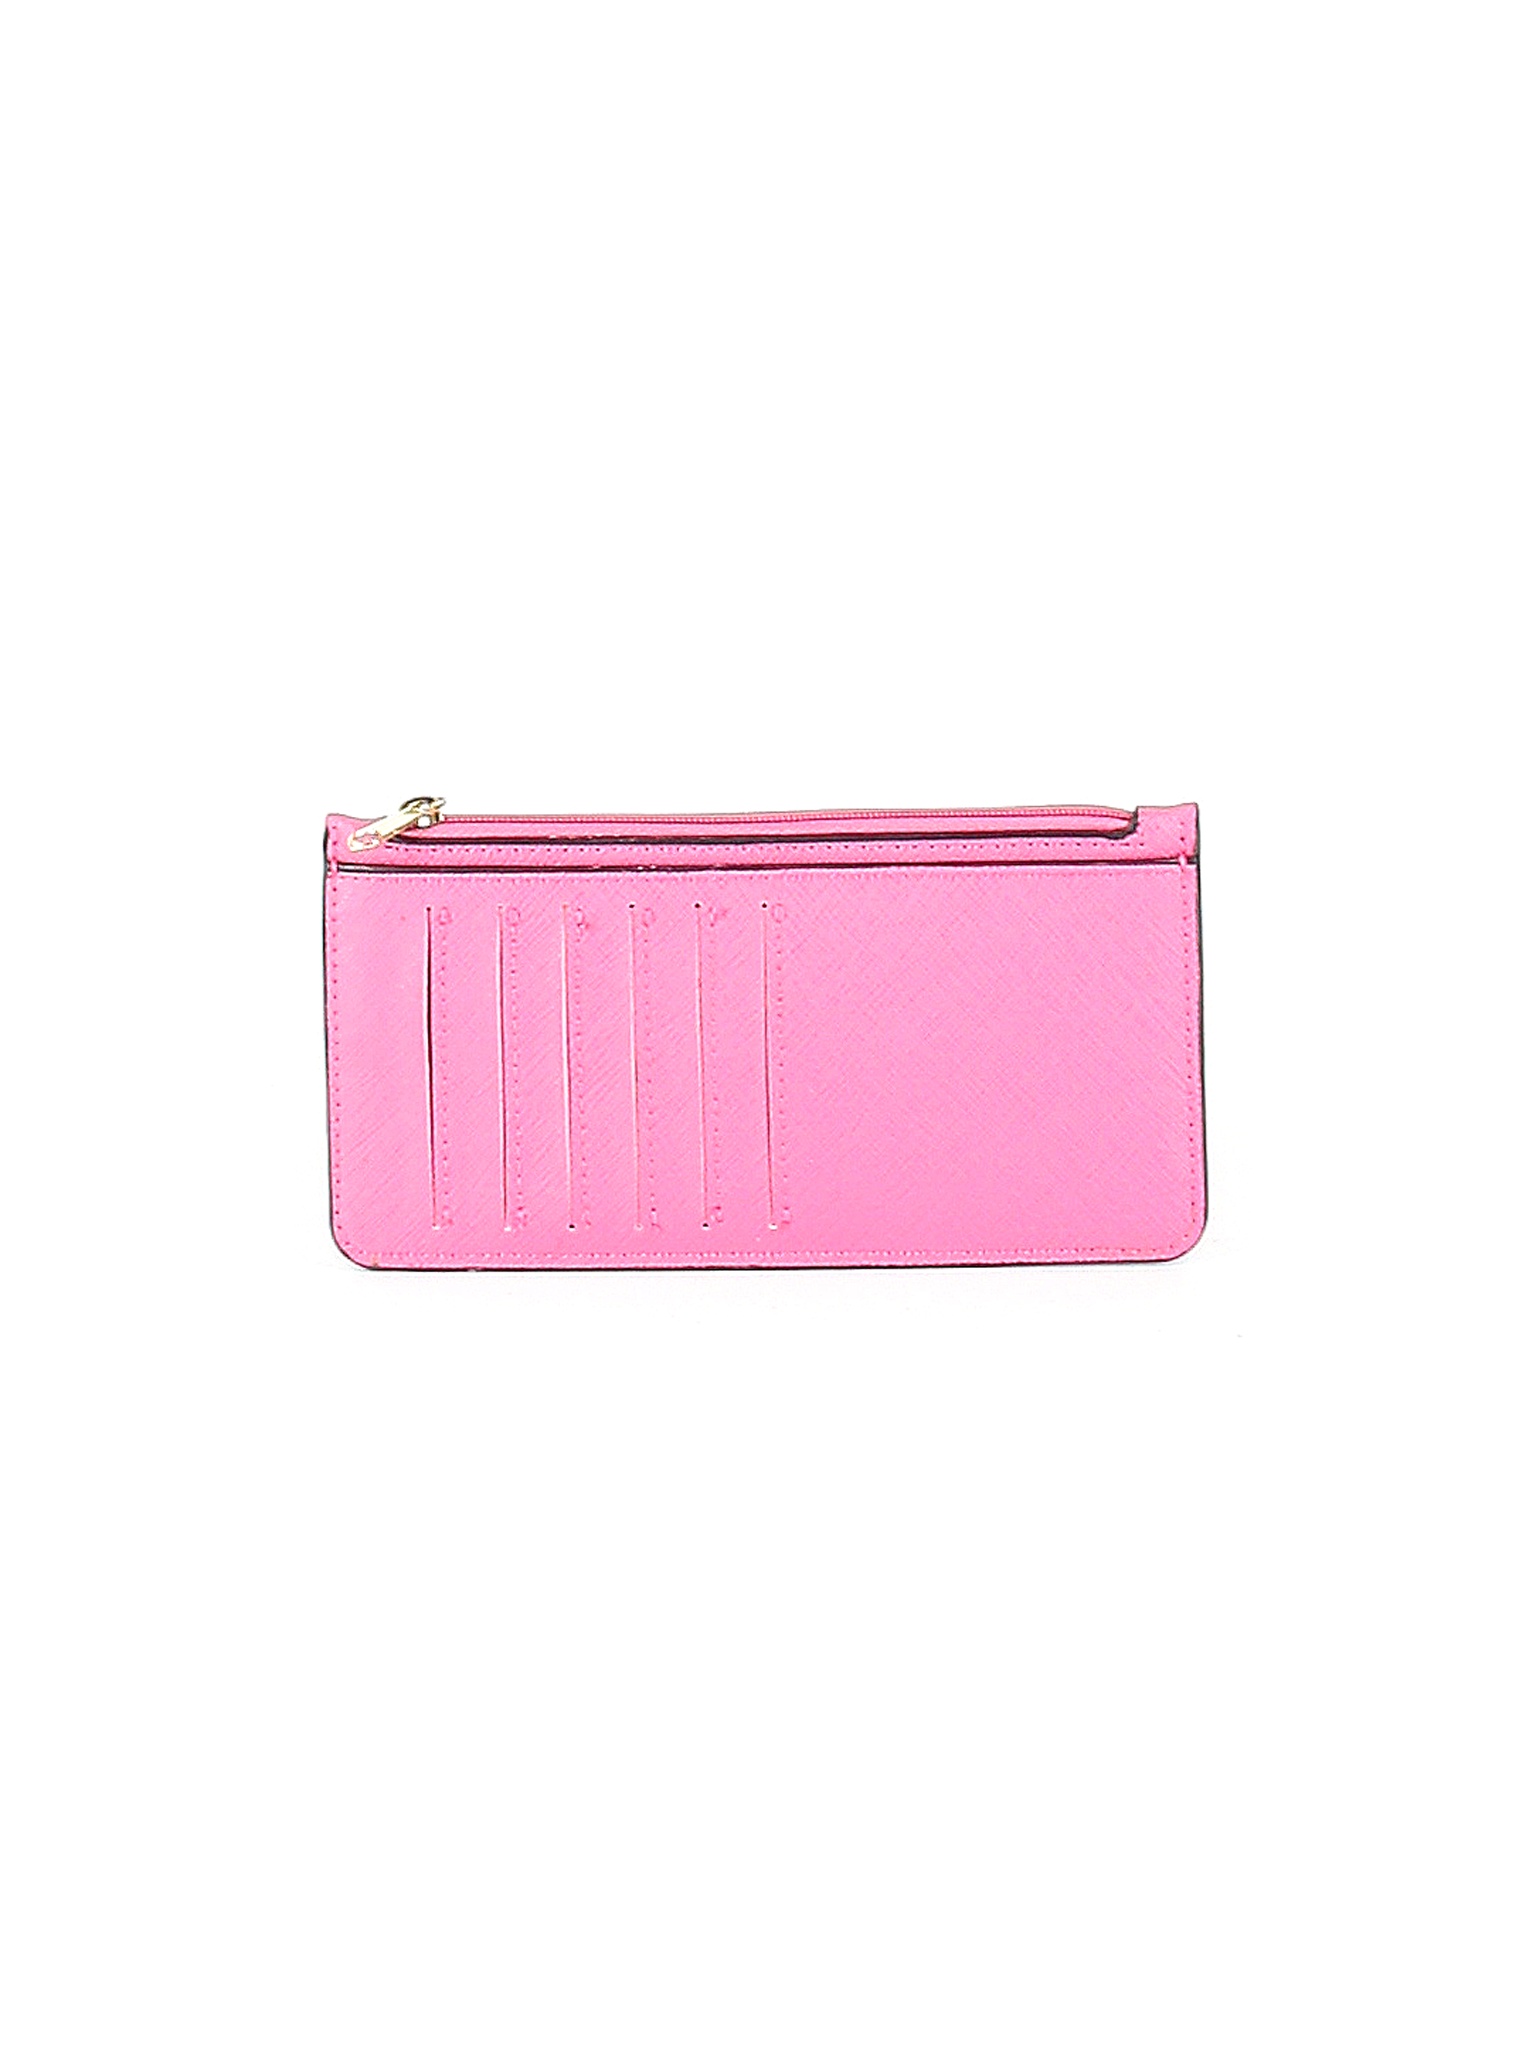 Unbranded Women Pink Wallet One Size | eBay